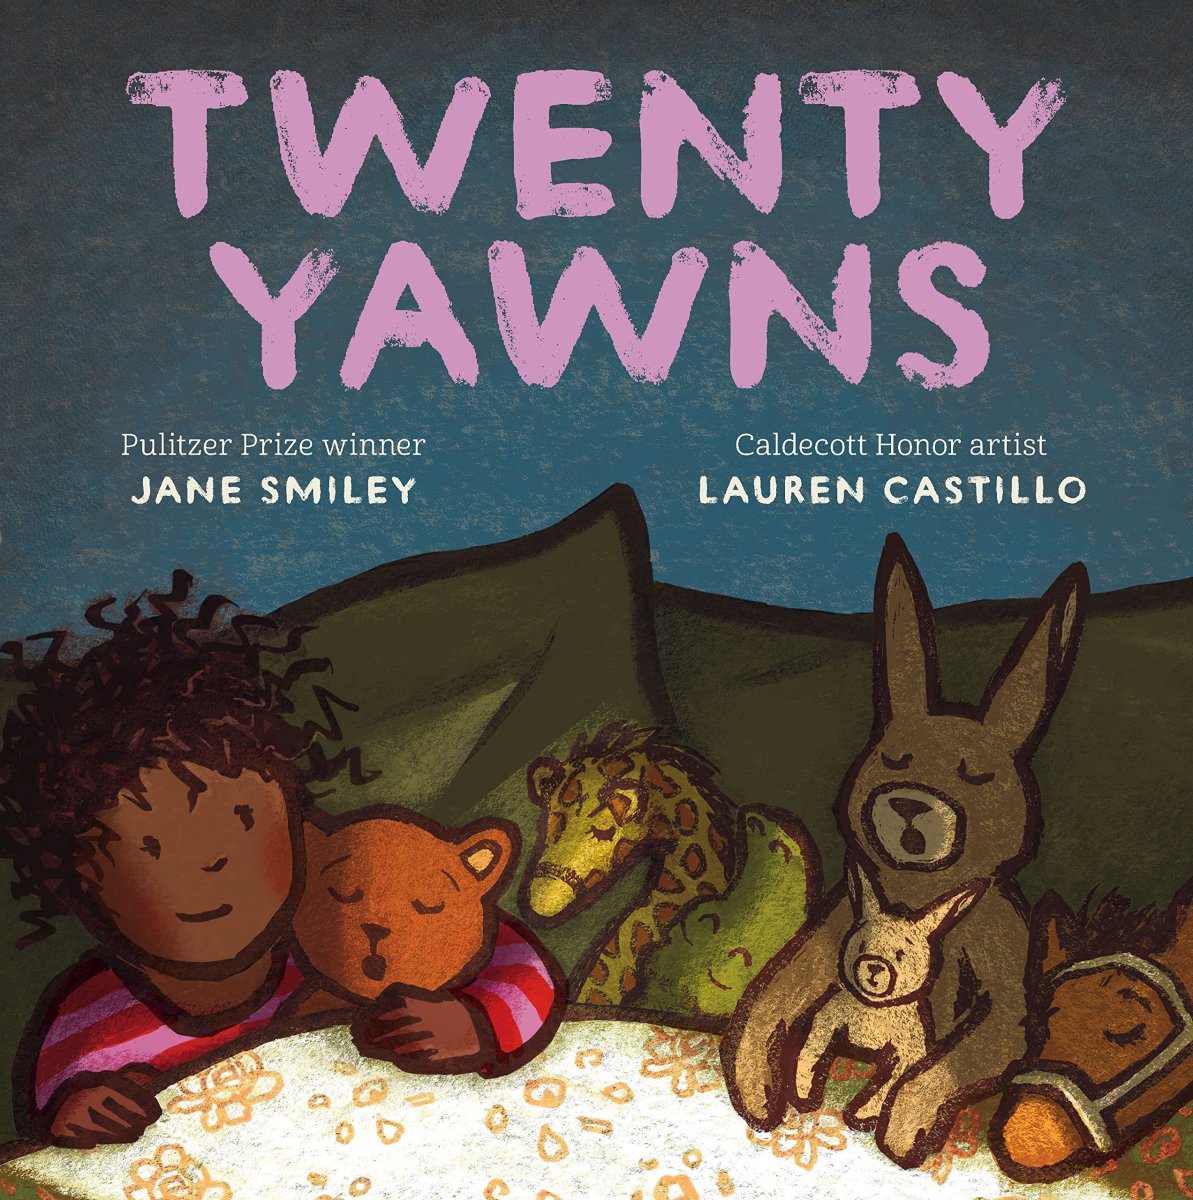 Twenty Yawns by Jane Smiley